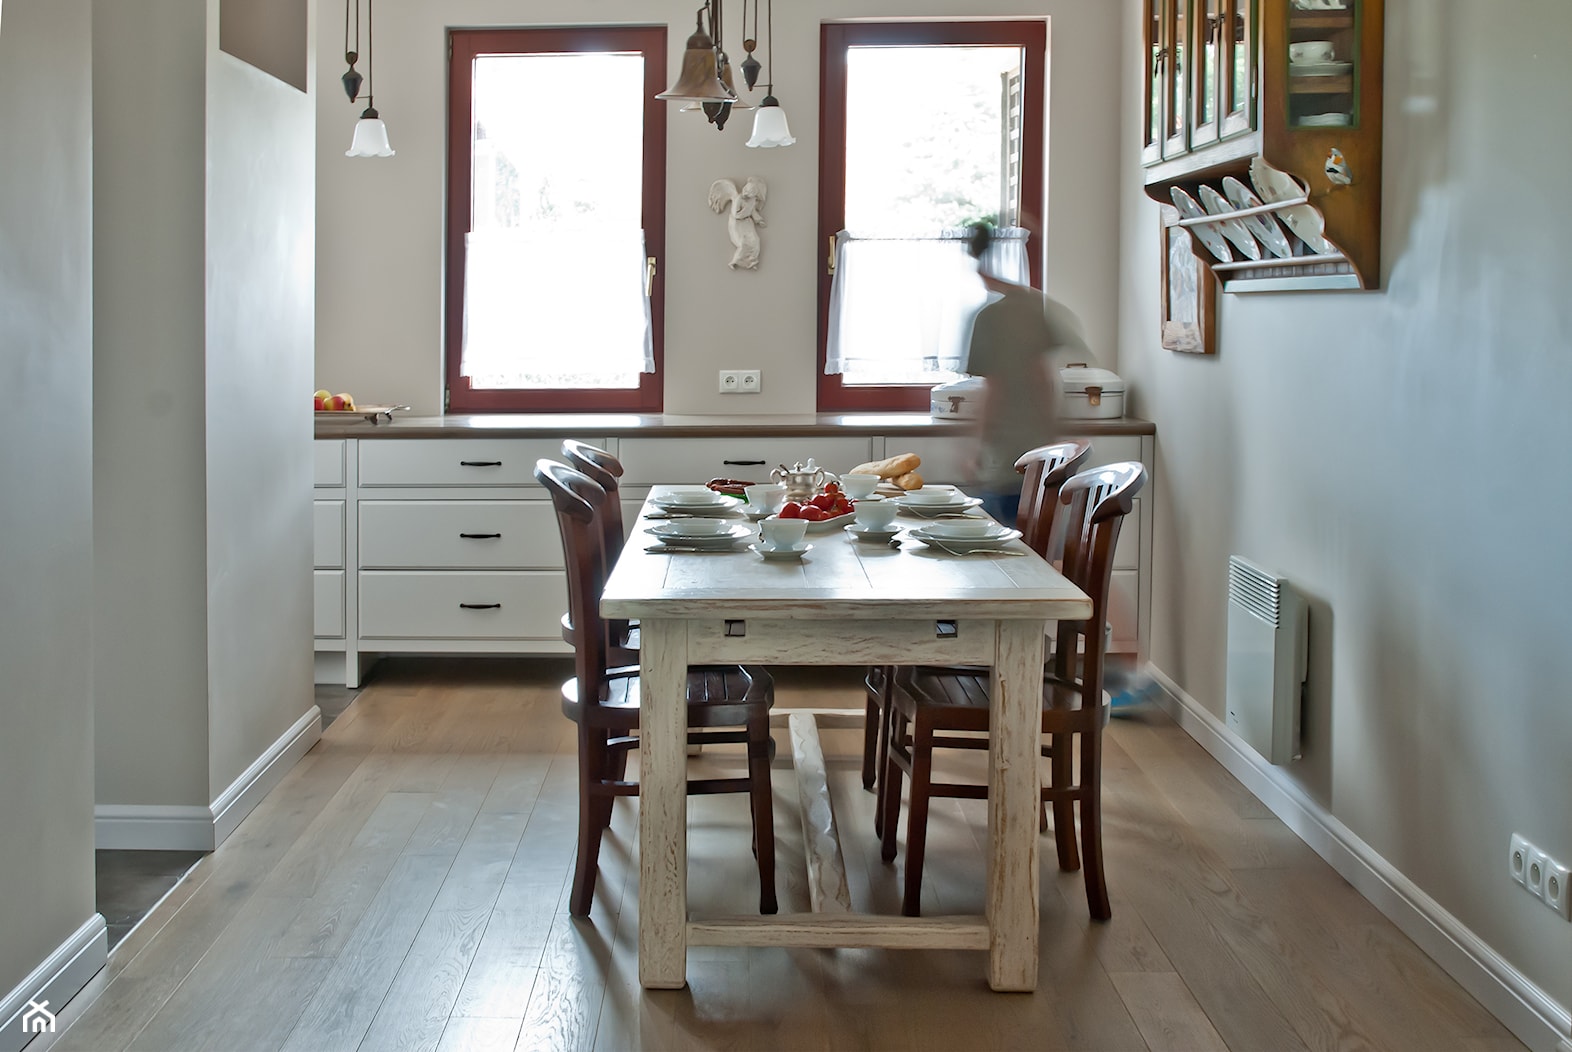 dom rustykalny - Jadalnia, styl rustykalny - zdjęcie od We-ska design - Homebook